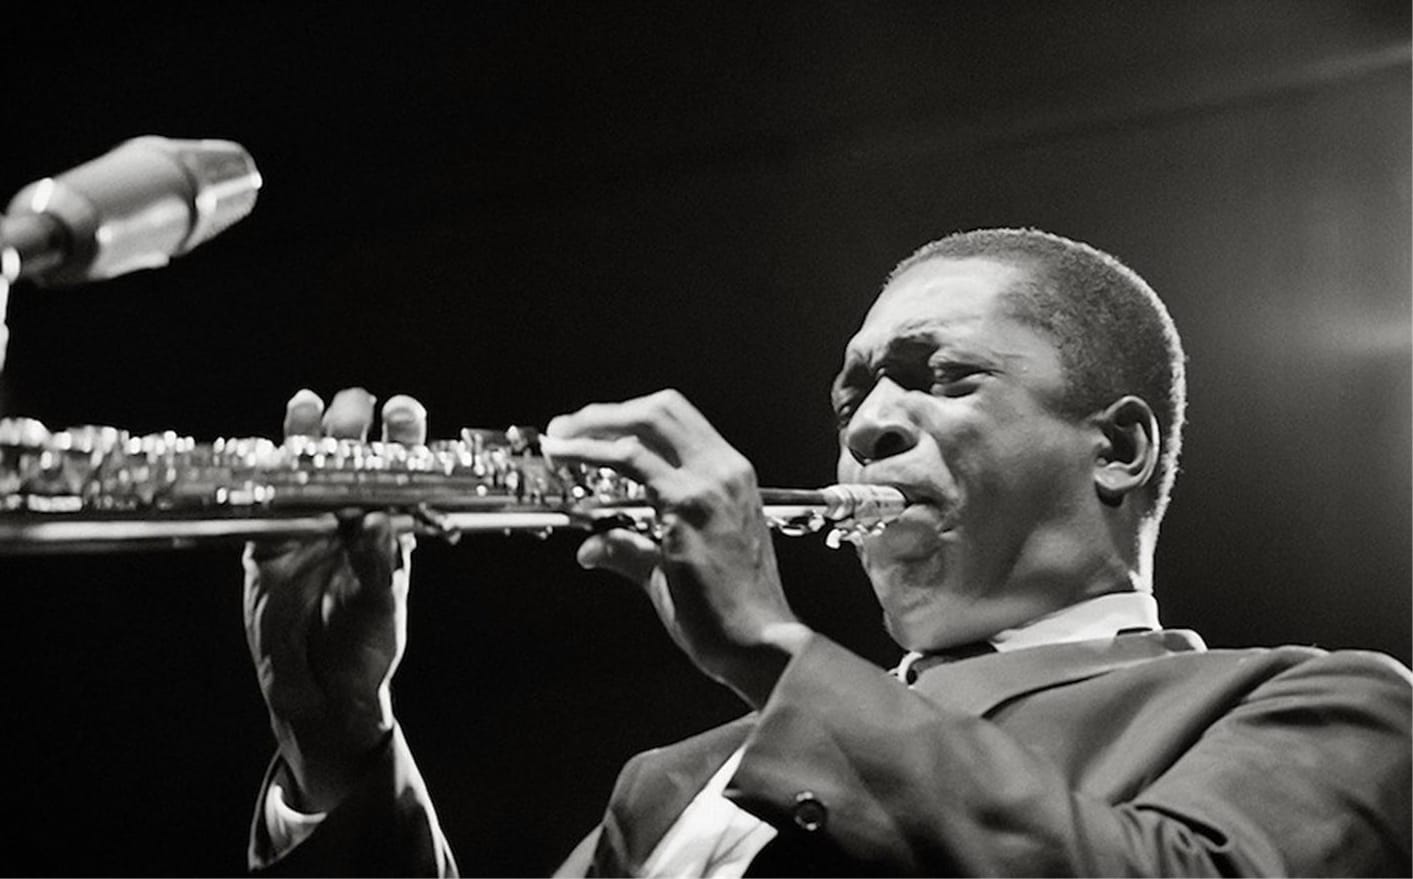 John Coltrane in 1963